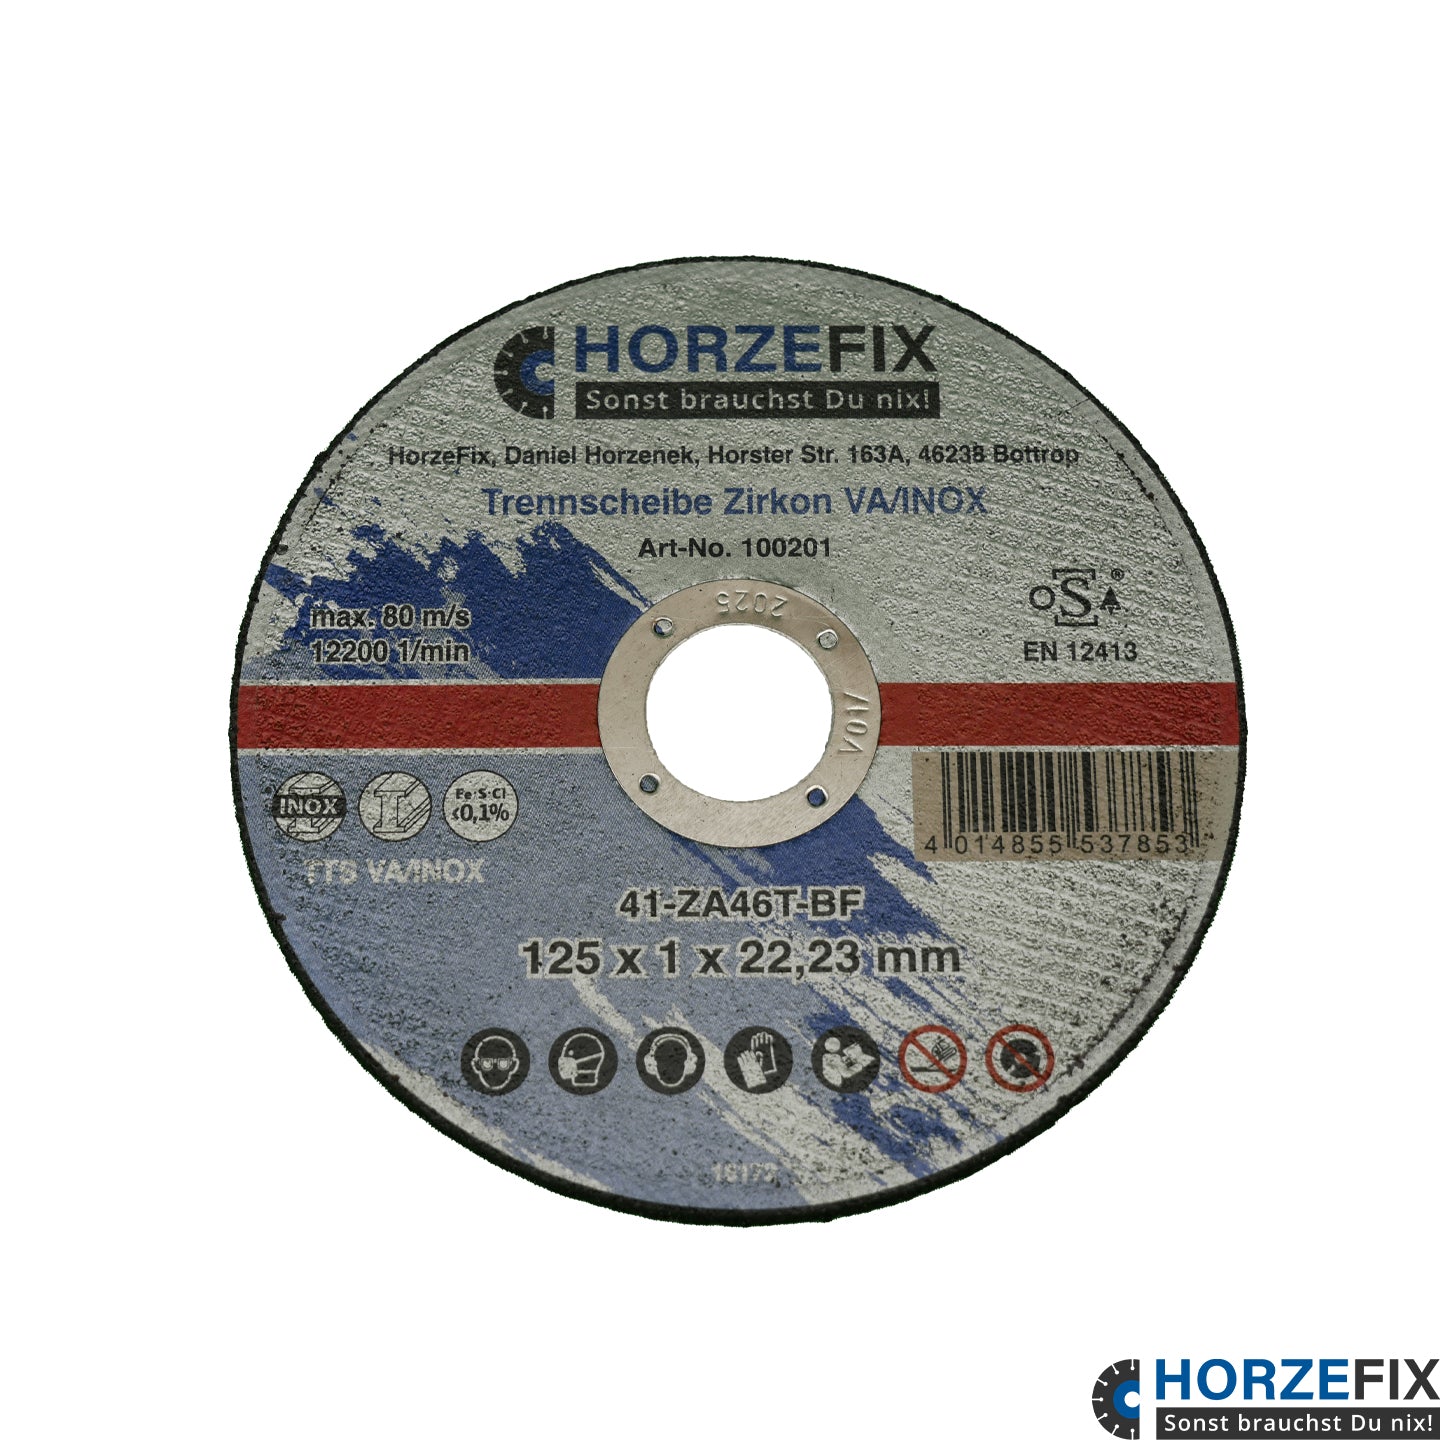 HorzeFix Trennscheibe 125 Metall 1mm dünn für die Flex VA/INOX 125 x 1,0 mm x 22,23 Zirkonkorund horzefix